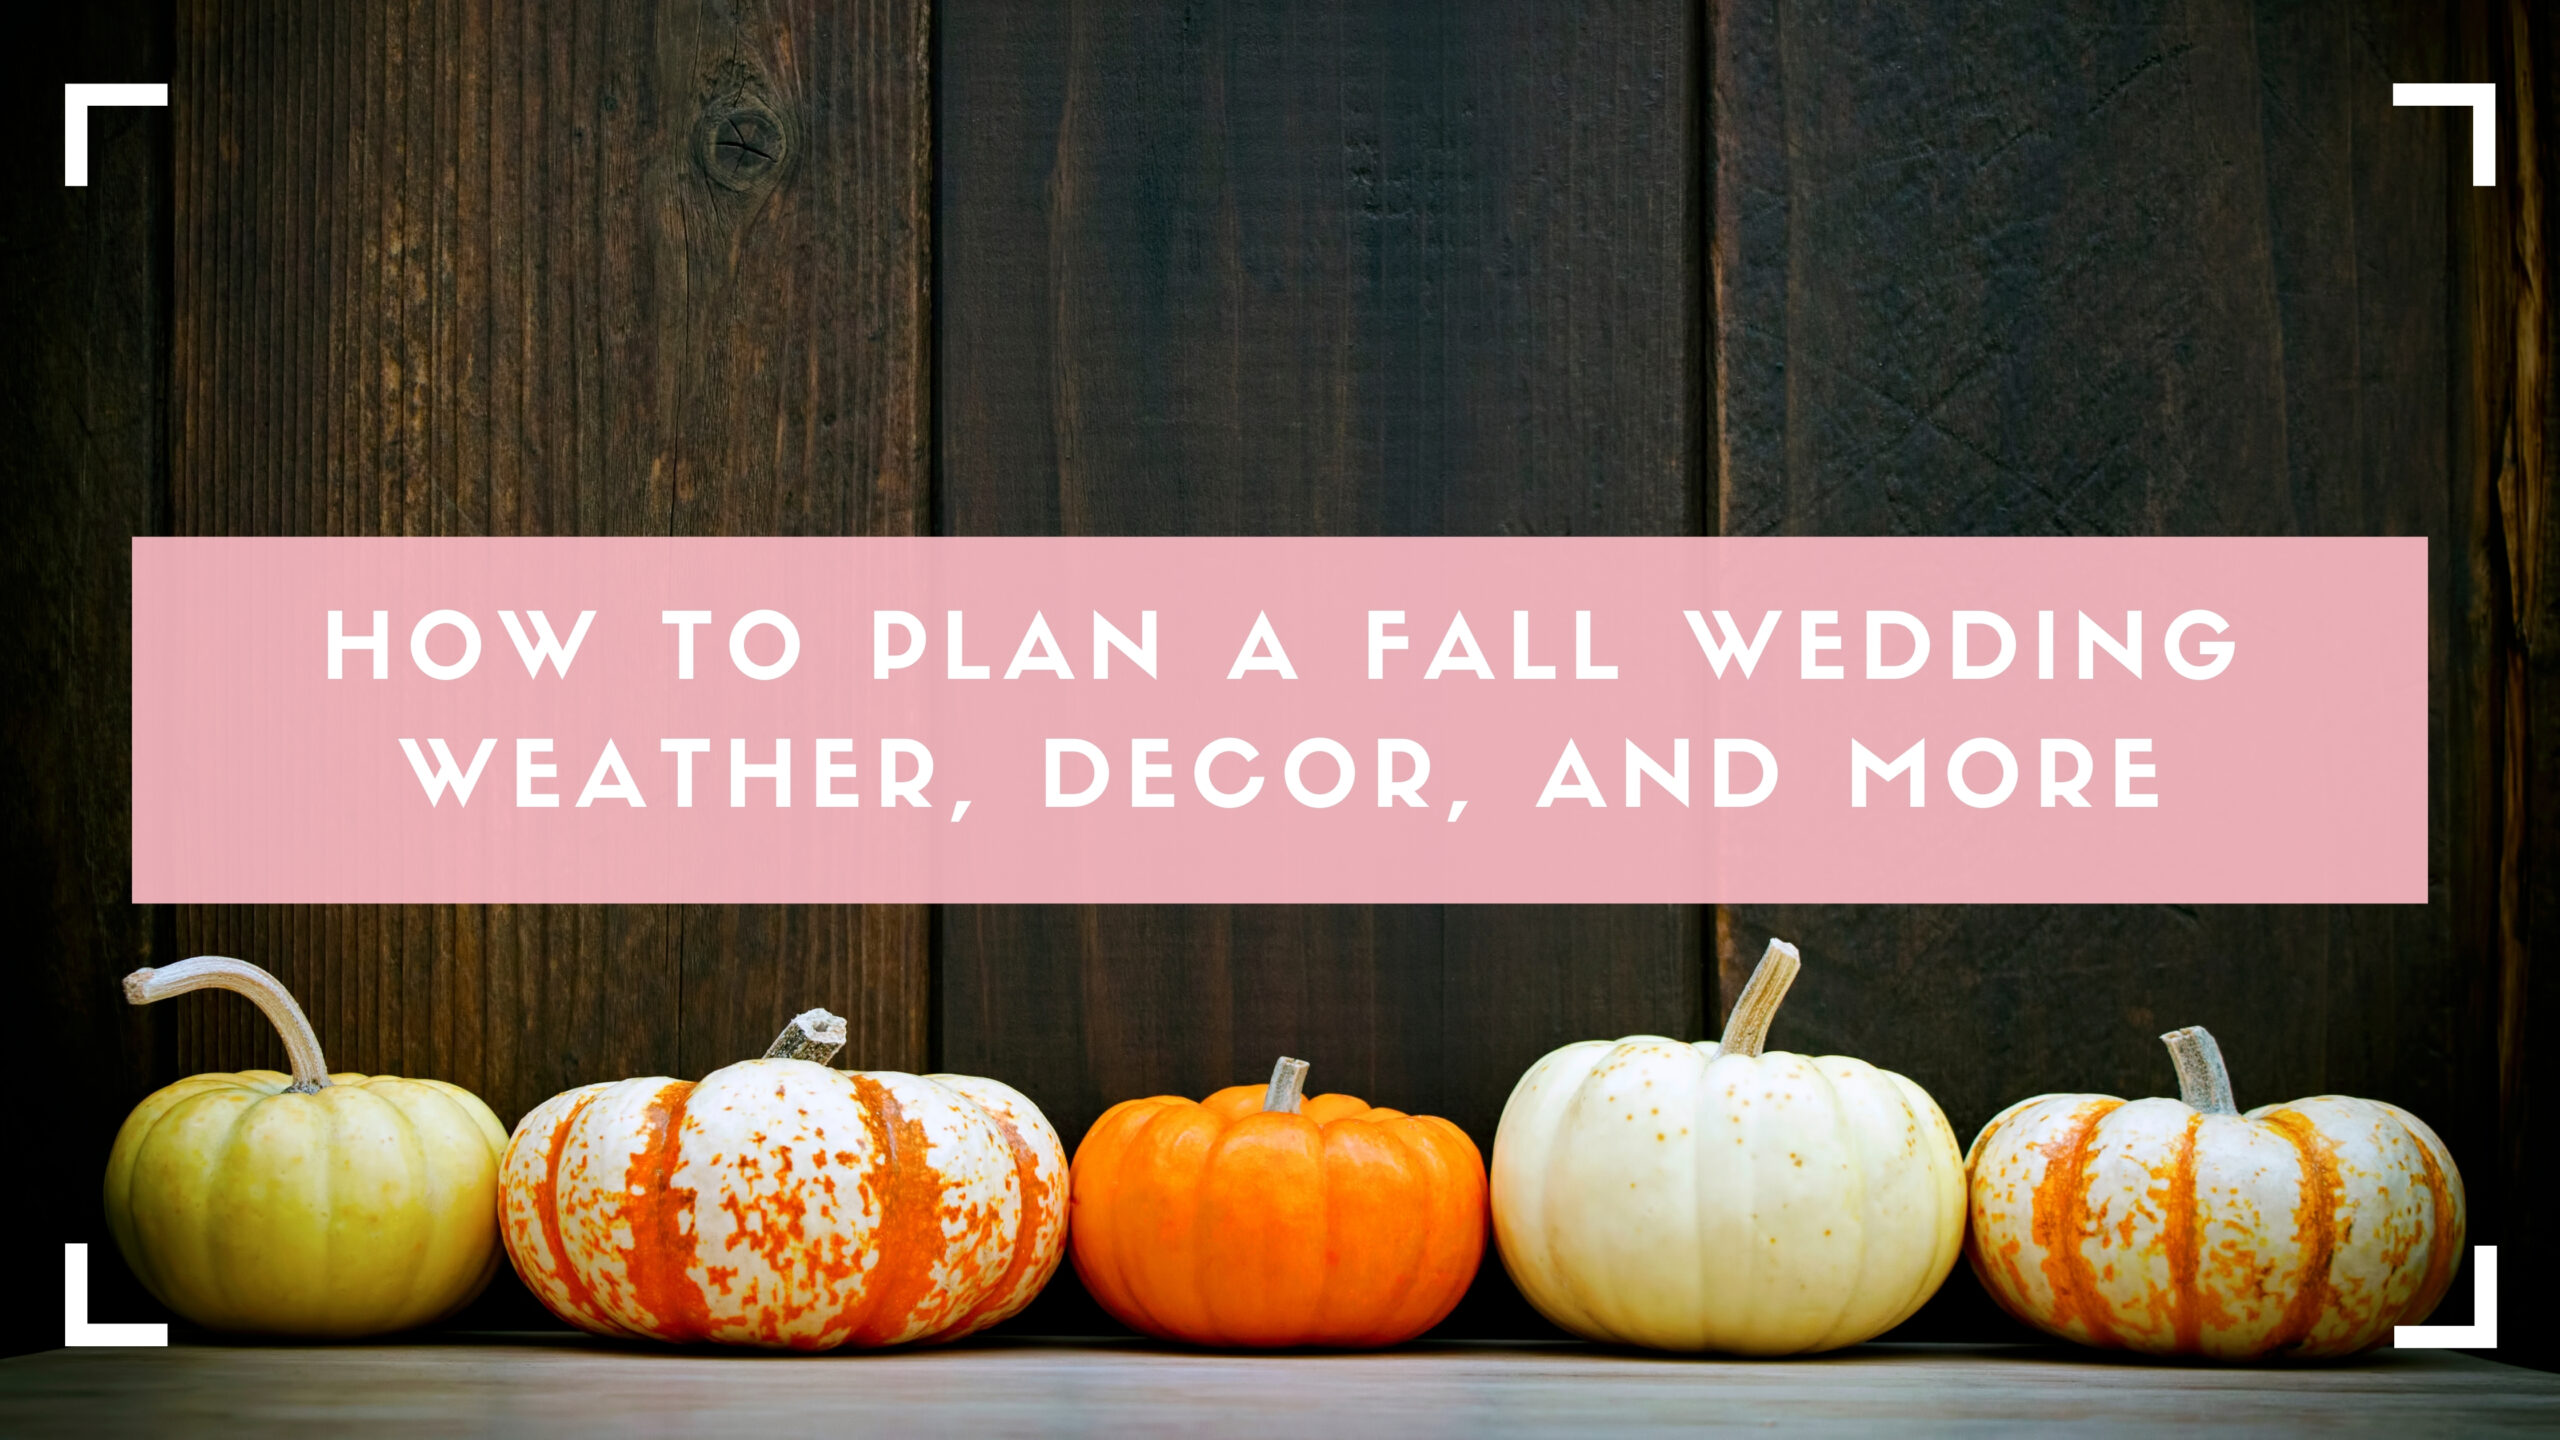 Decoración de bodas de otoño, calabazas cabecera del blog